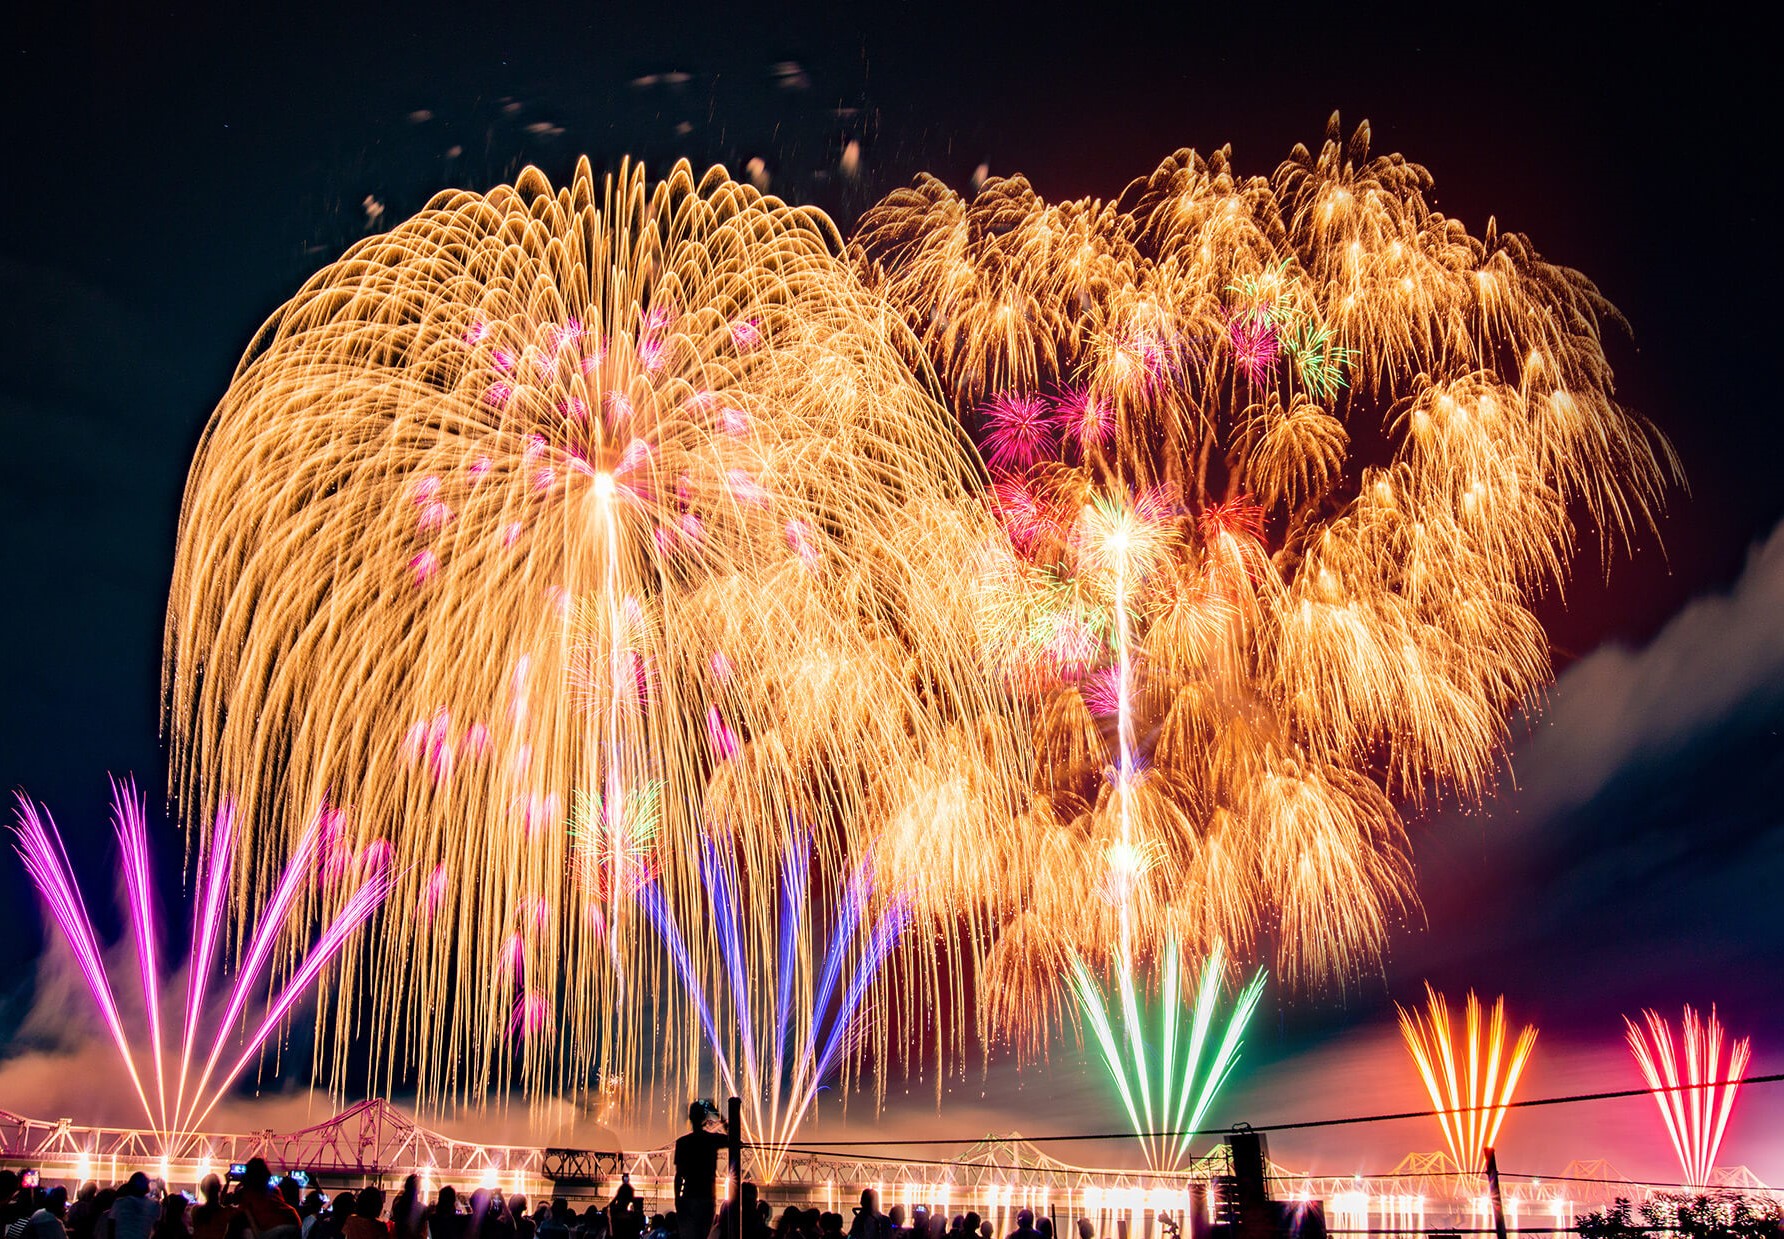 【日本三大花火】長岡花火 3年ぶりに美しく夜空を彩る！平和と復興に願いを込めて打ちあがれ！